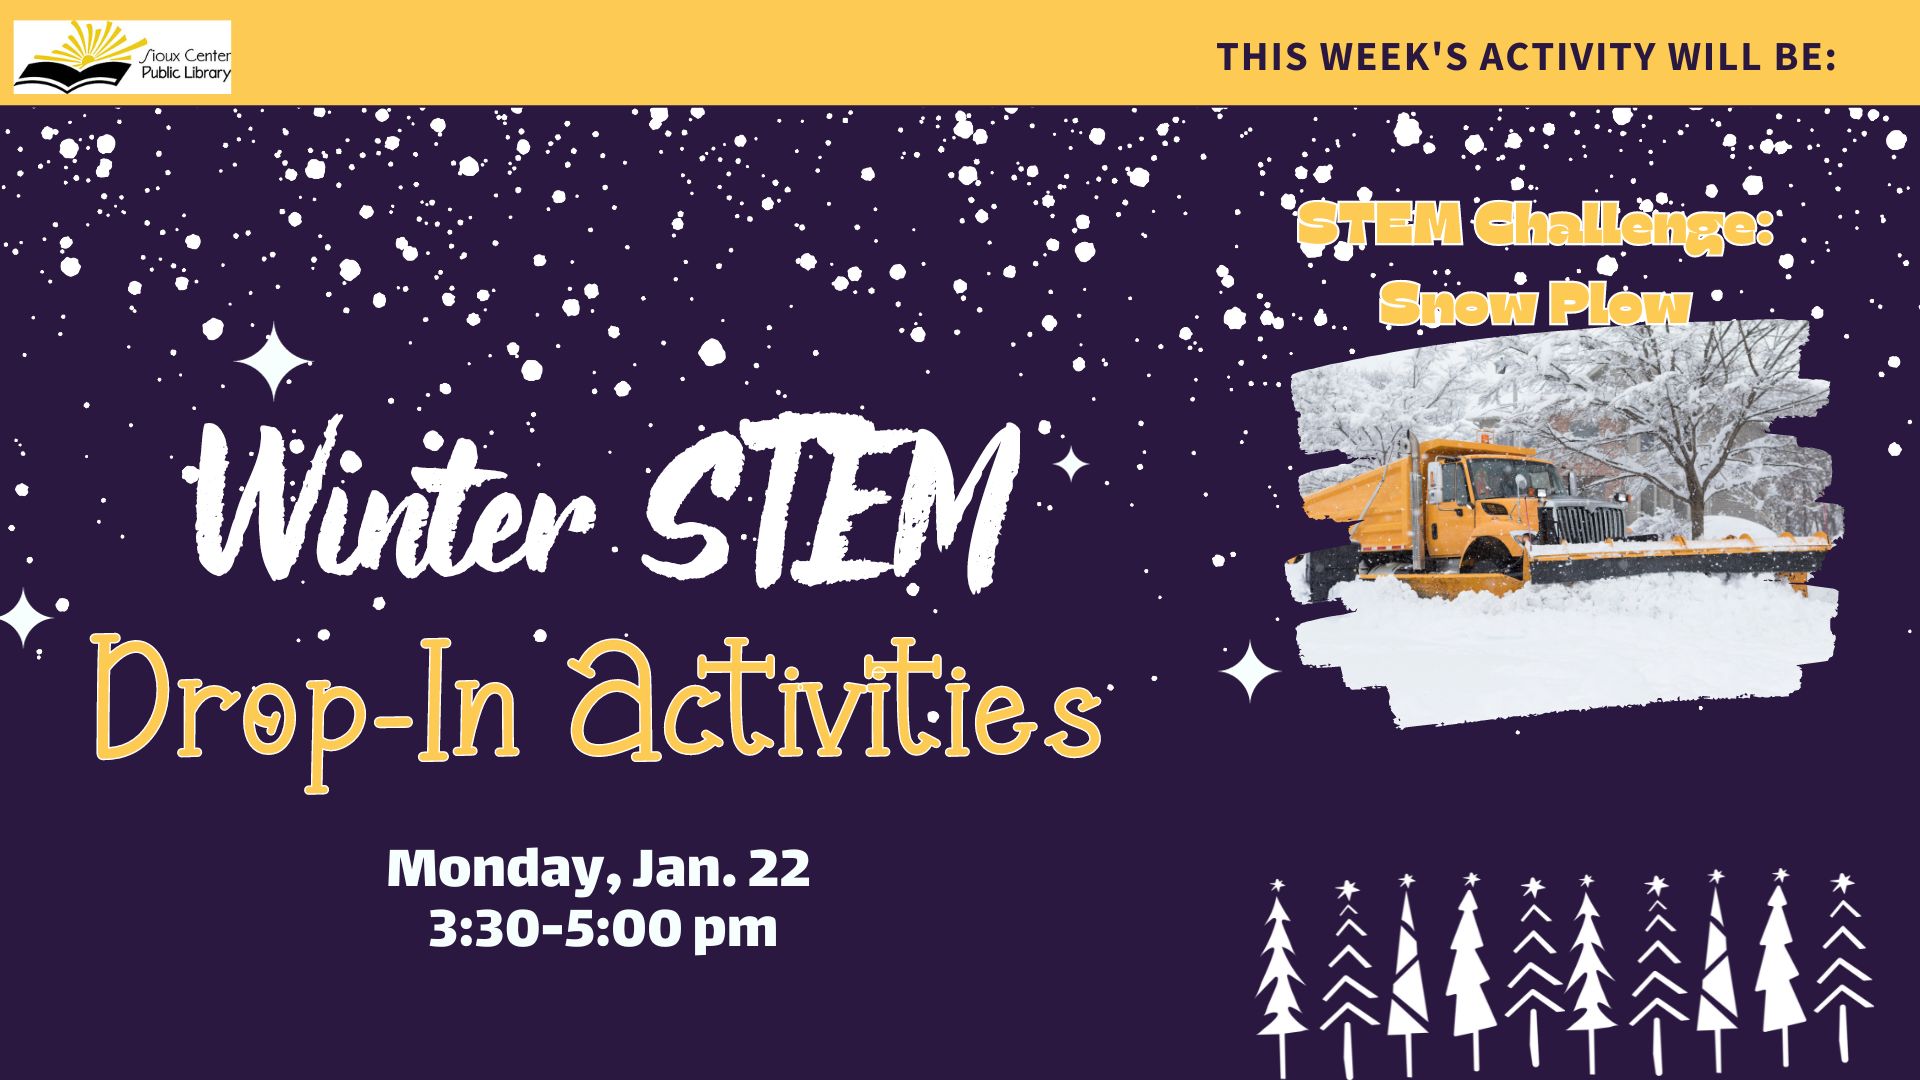 STEM Challenge: Build a Snow Plow